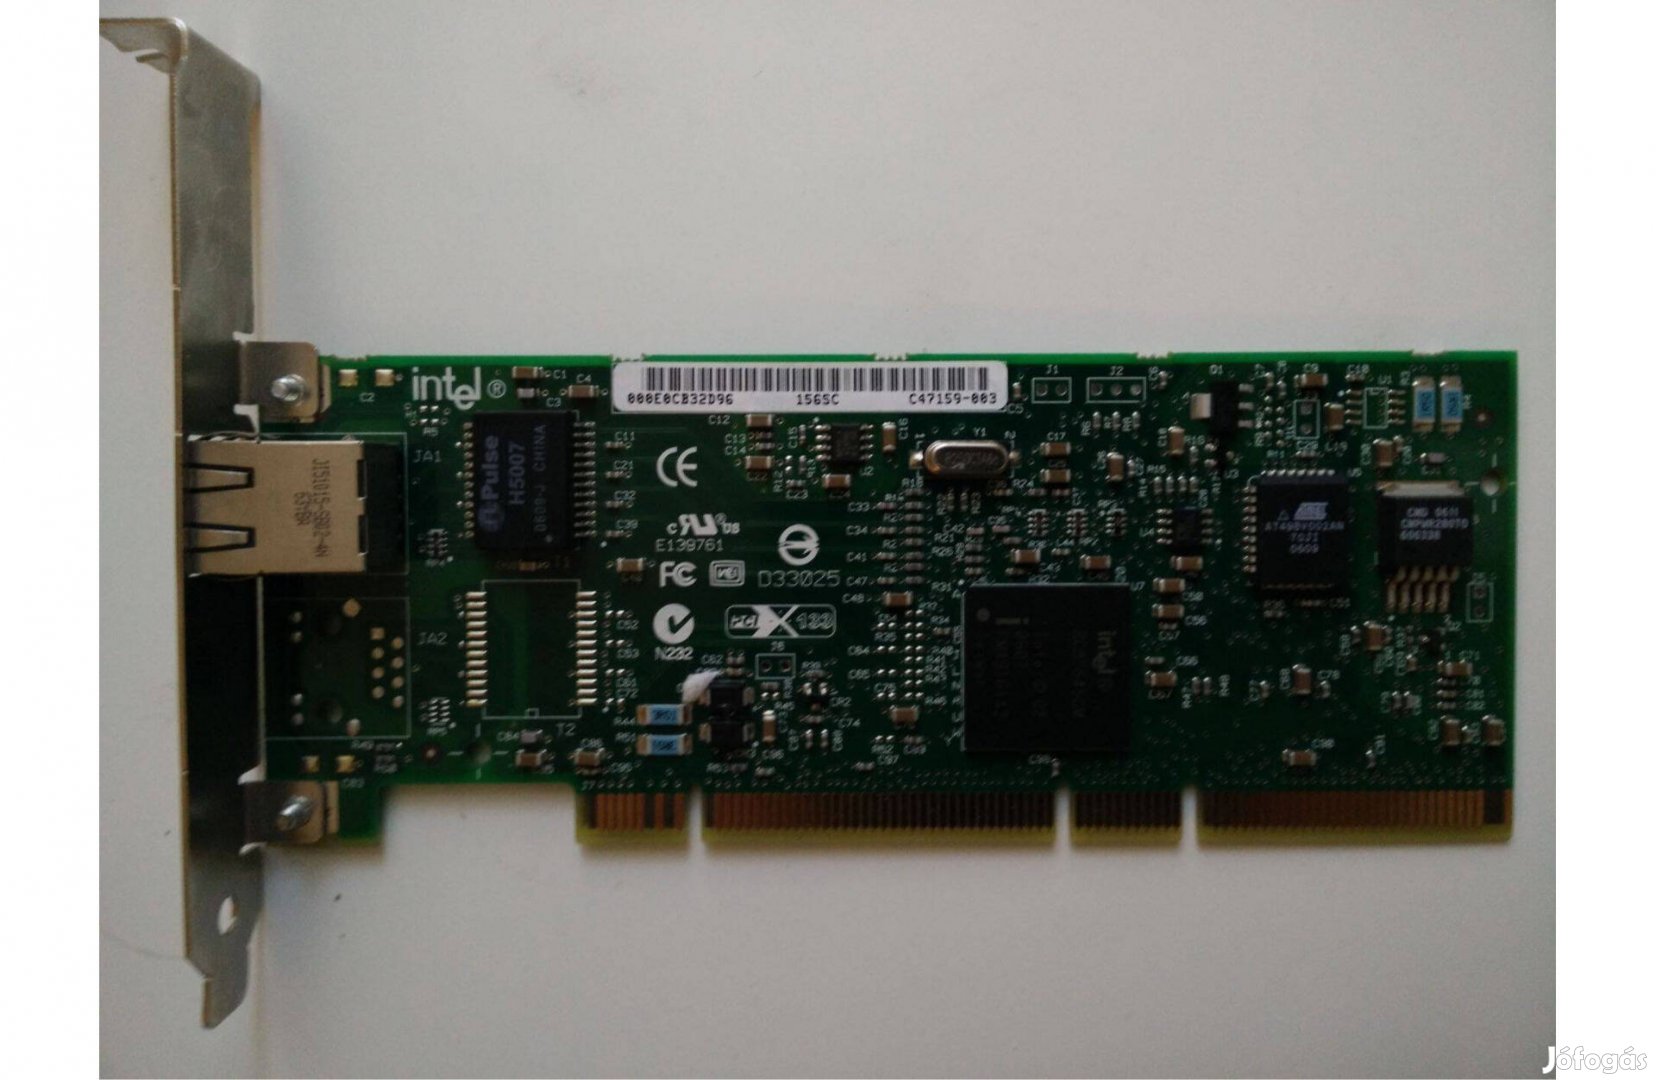 Intel Pro/1000 MT PCI-X szerver Gigabit Ethernet kártya, nem tesztelt